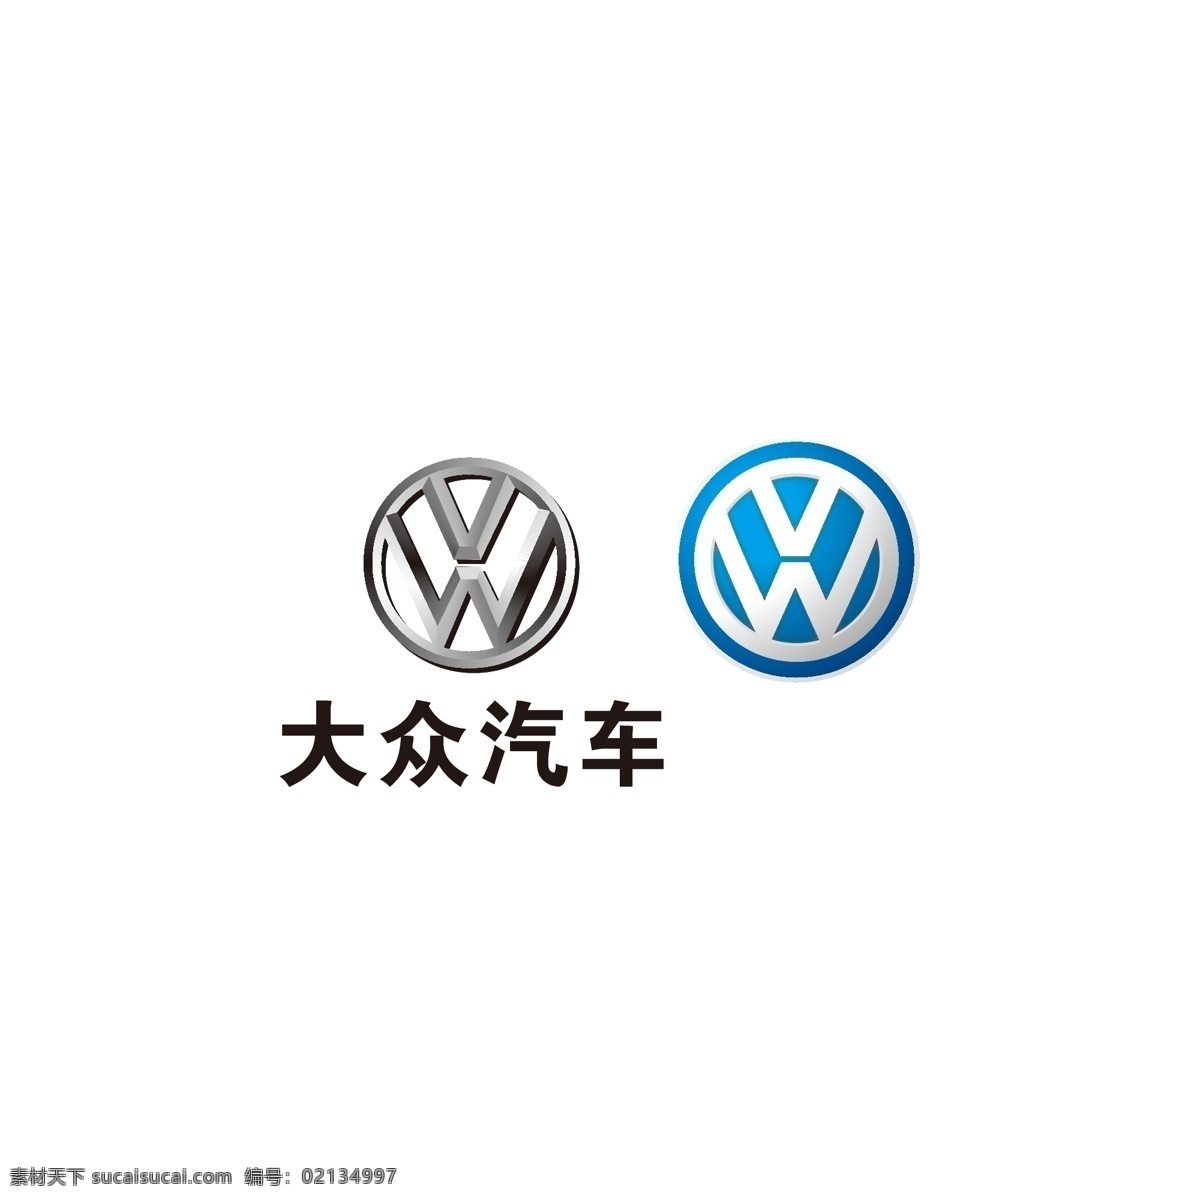 大众logo 大众标志 大众图标 大众小图标 大众商标 大众汽车 logo 大众汽车标志 大众汽车商标 一汽大众